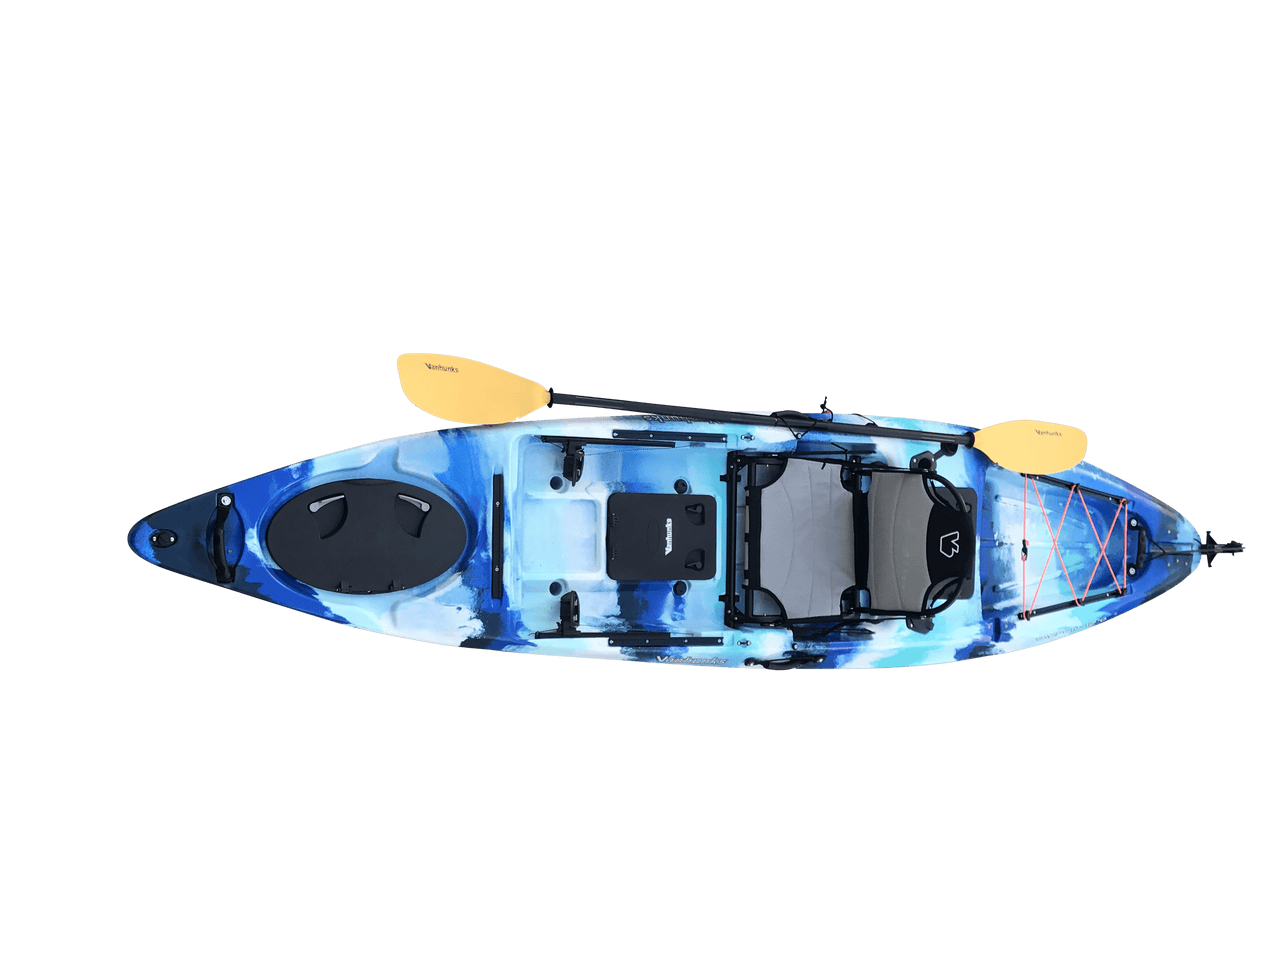 Vanhunks 12' Tarpon 2 Fishing Kayak - Good Wave